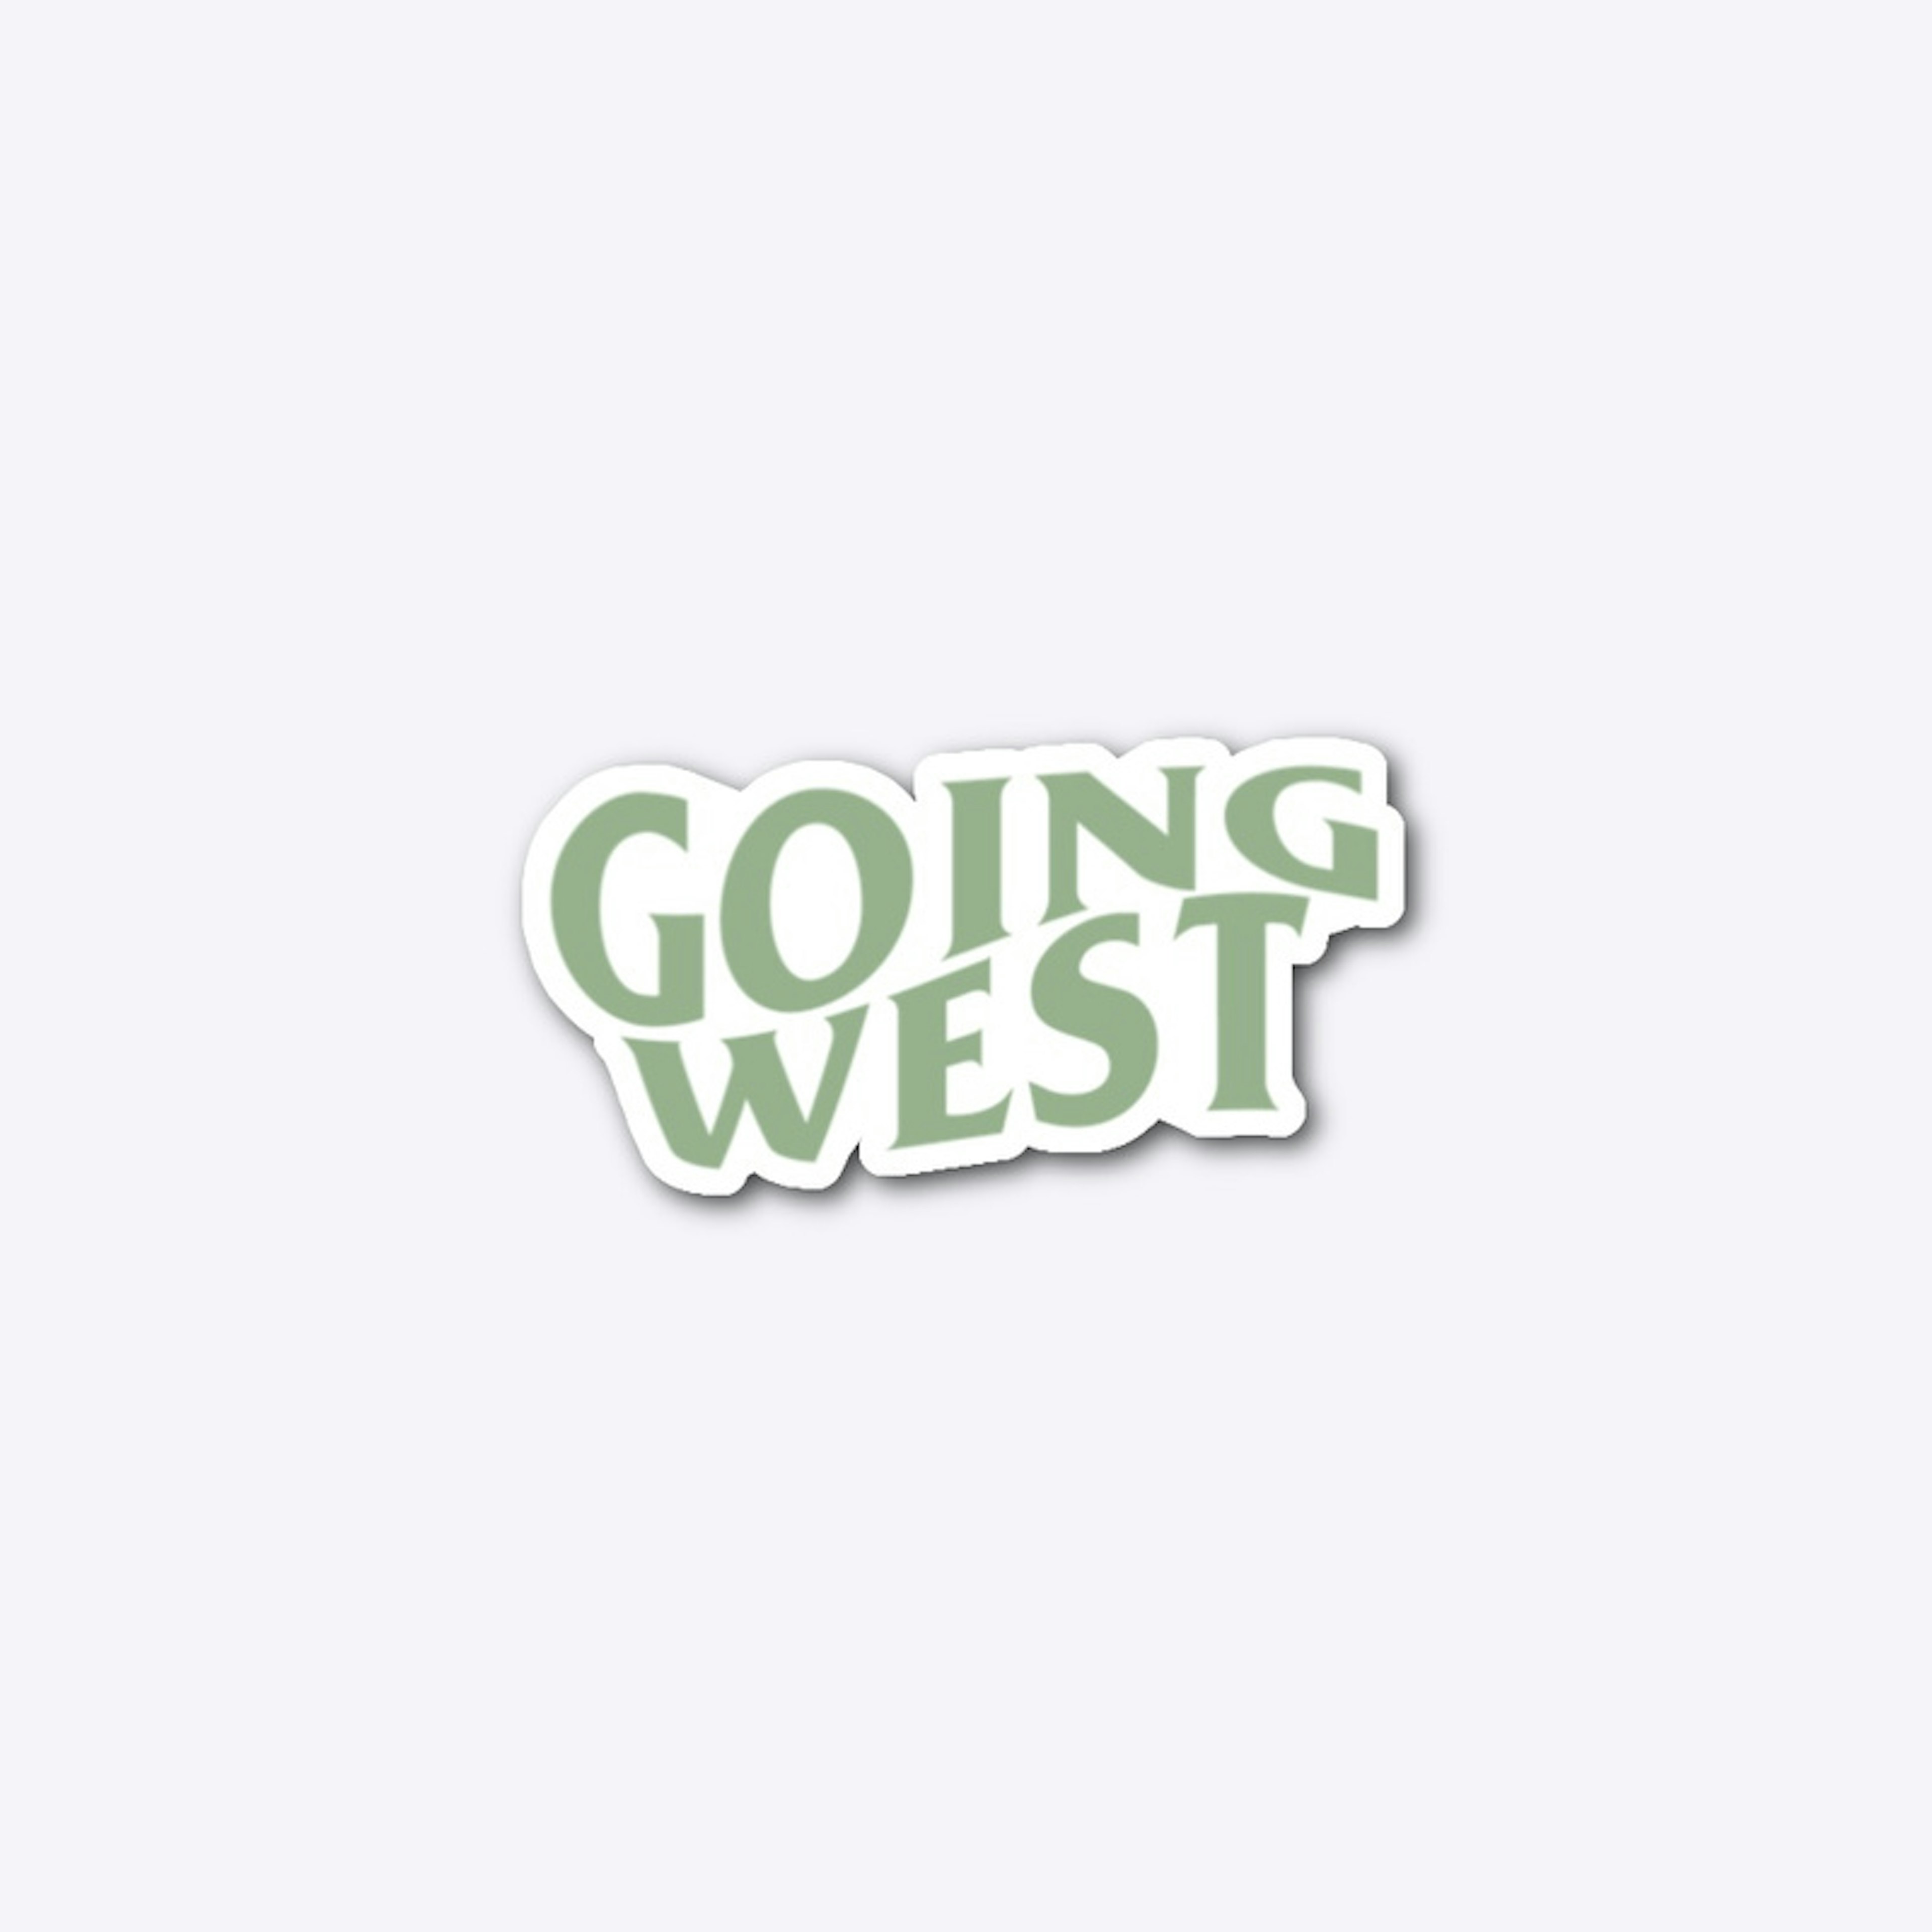 Going West Sticker